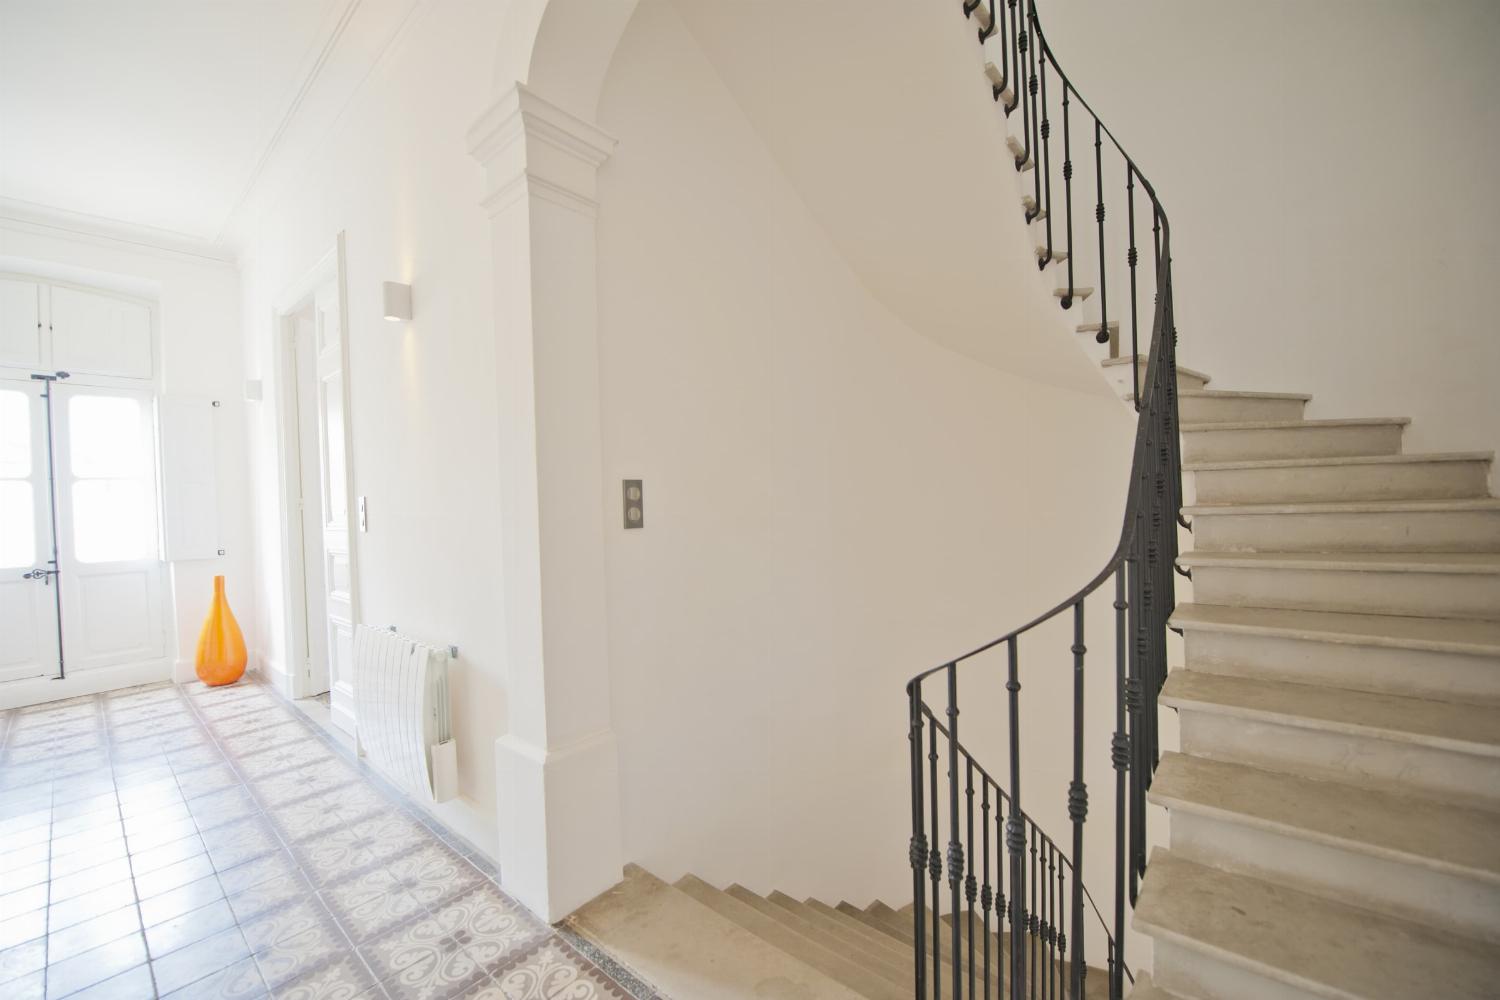 Couloir du 1er étage | Location maison dans le sud de la France